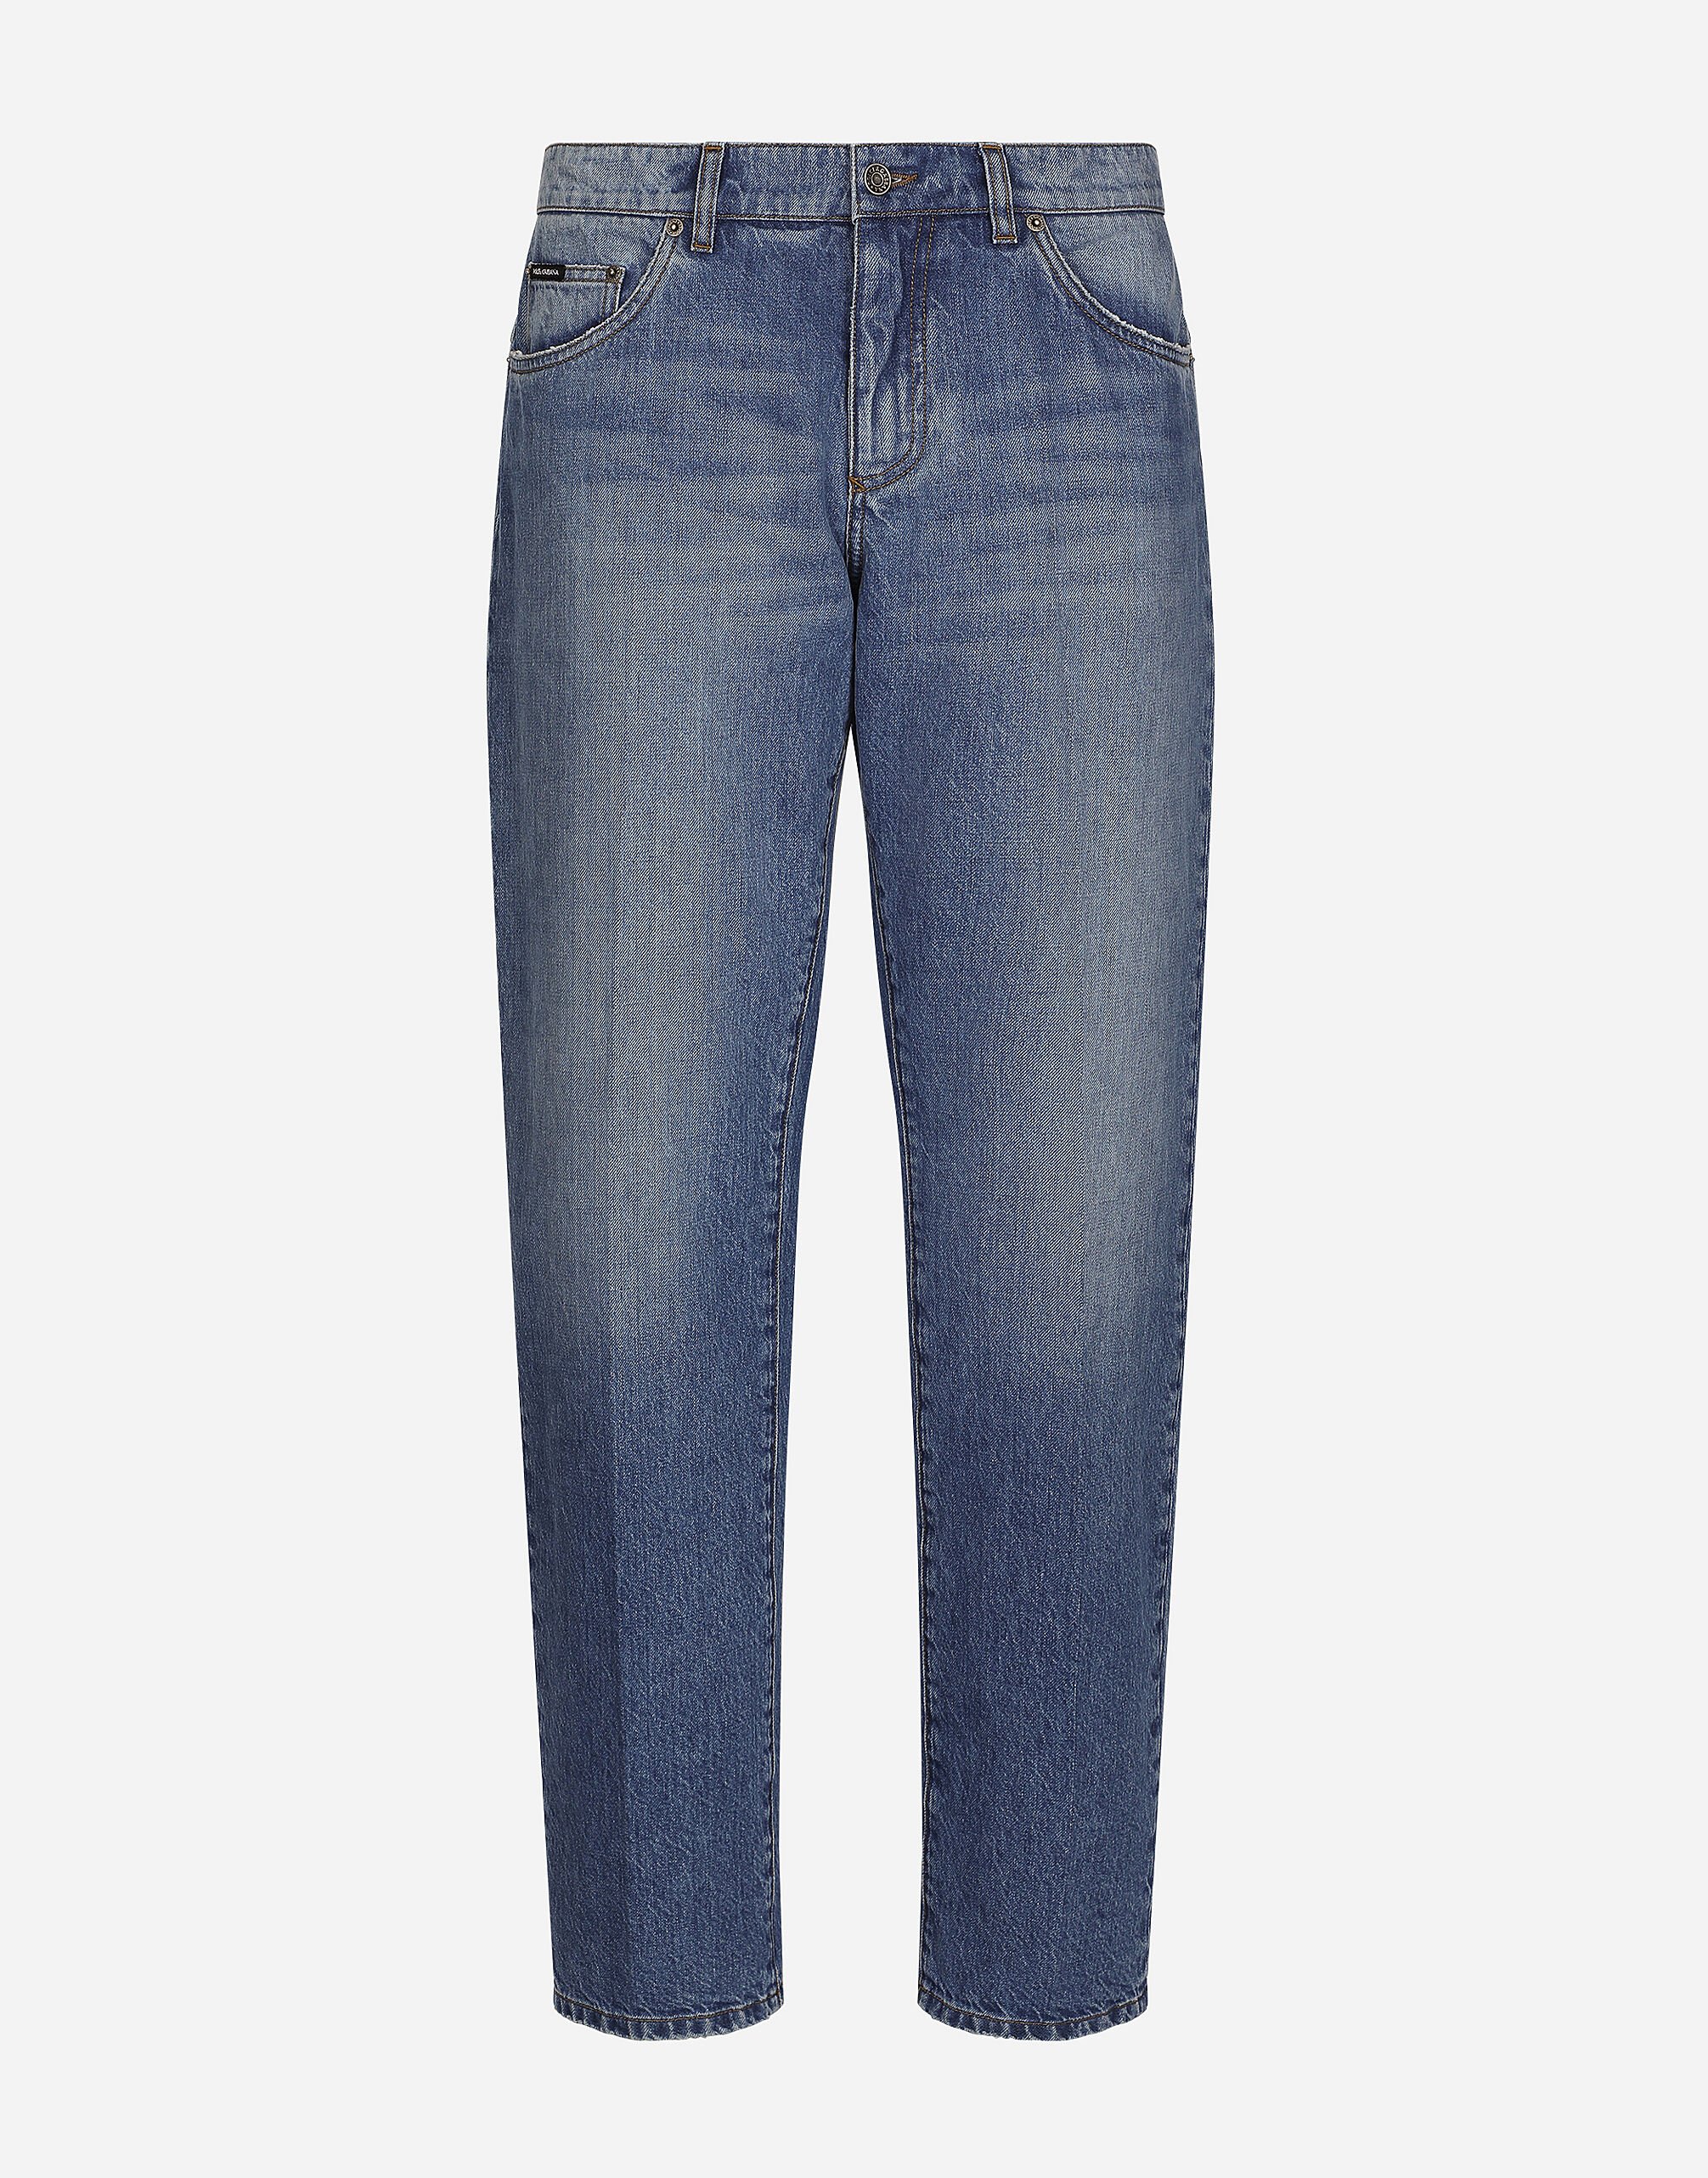 Dolce & Gabbana Классические джинсы синего цвета Отпечатки G5JH9THI1S8